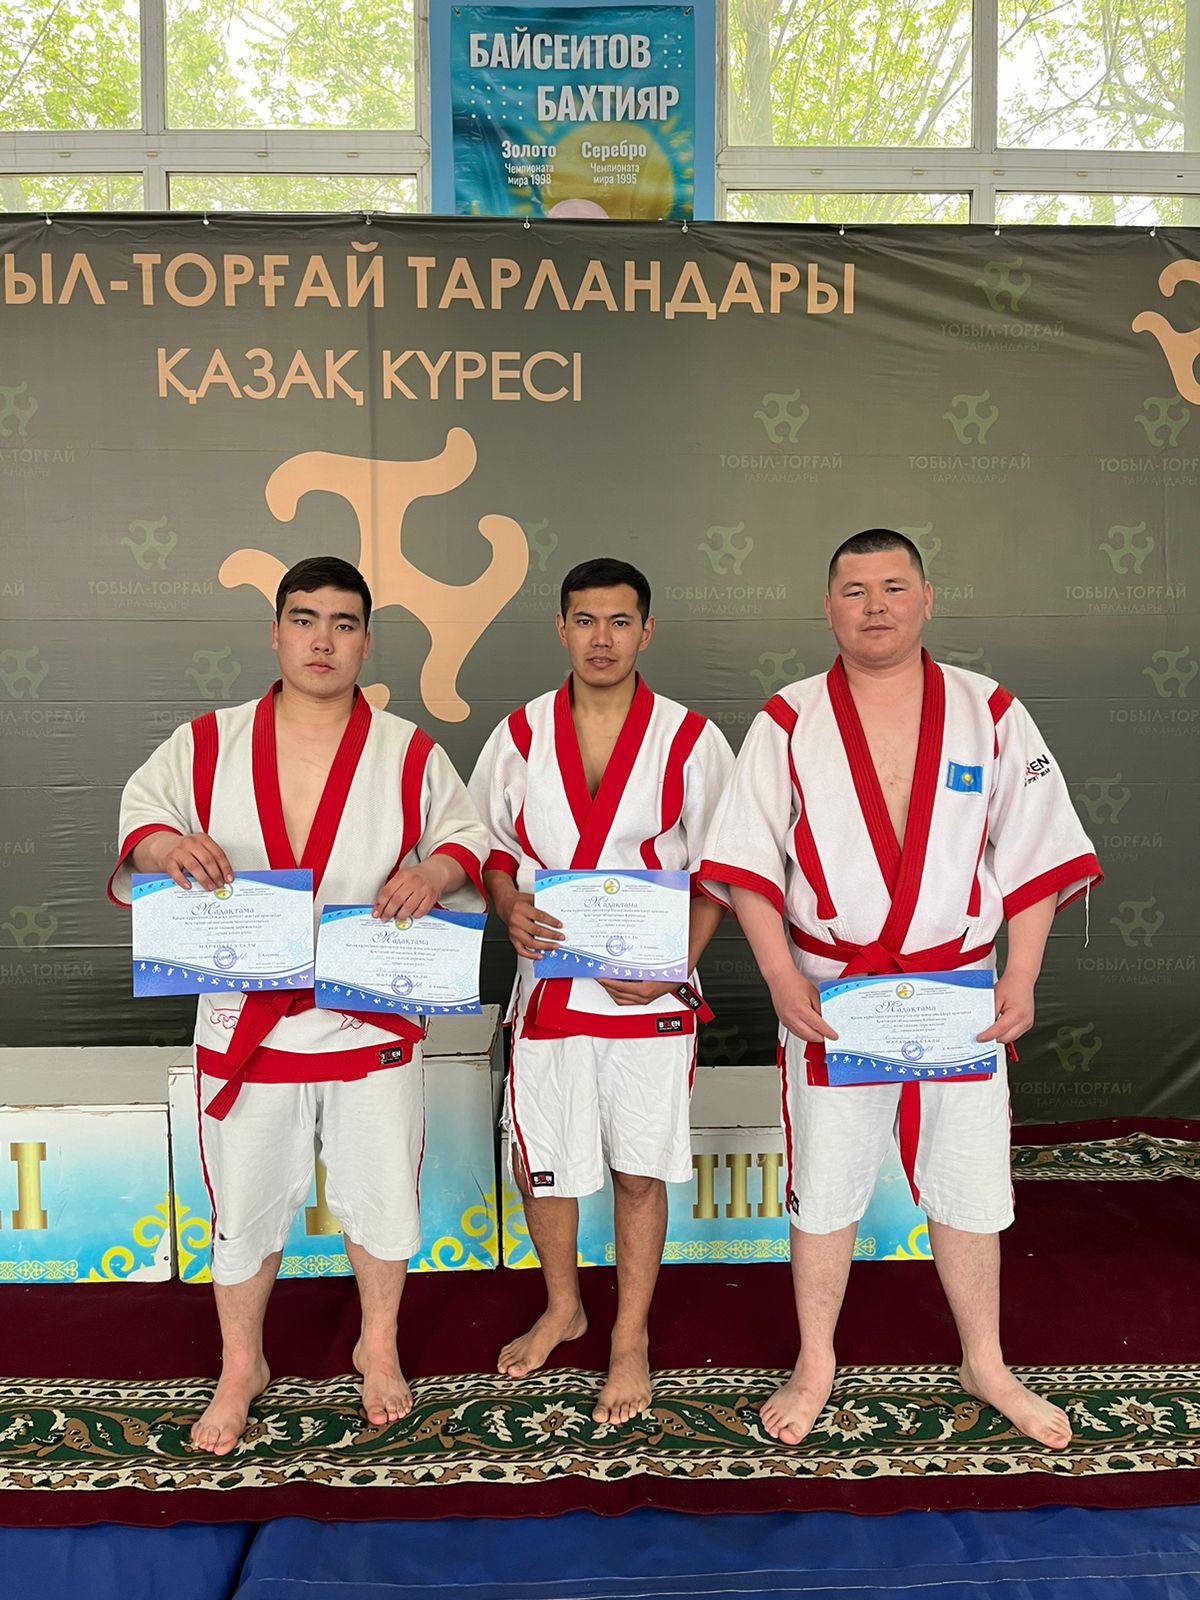 Спасатели Костанайской области стали призерами в соревнованиях по  «Қазақша күрес»